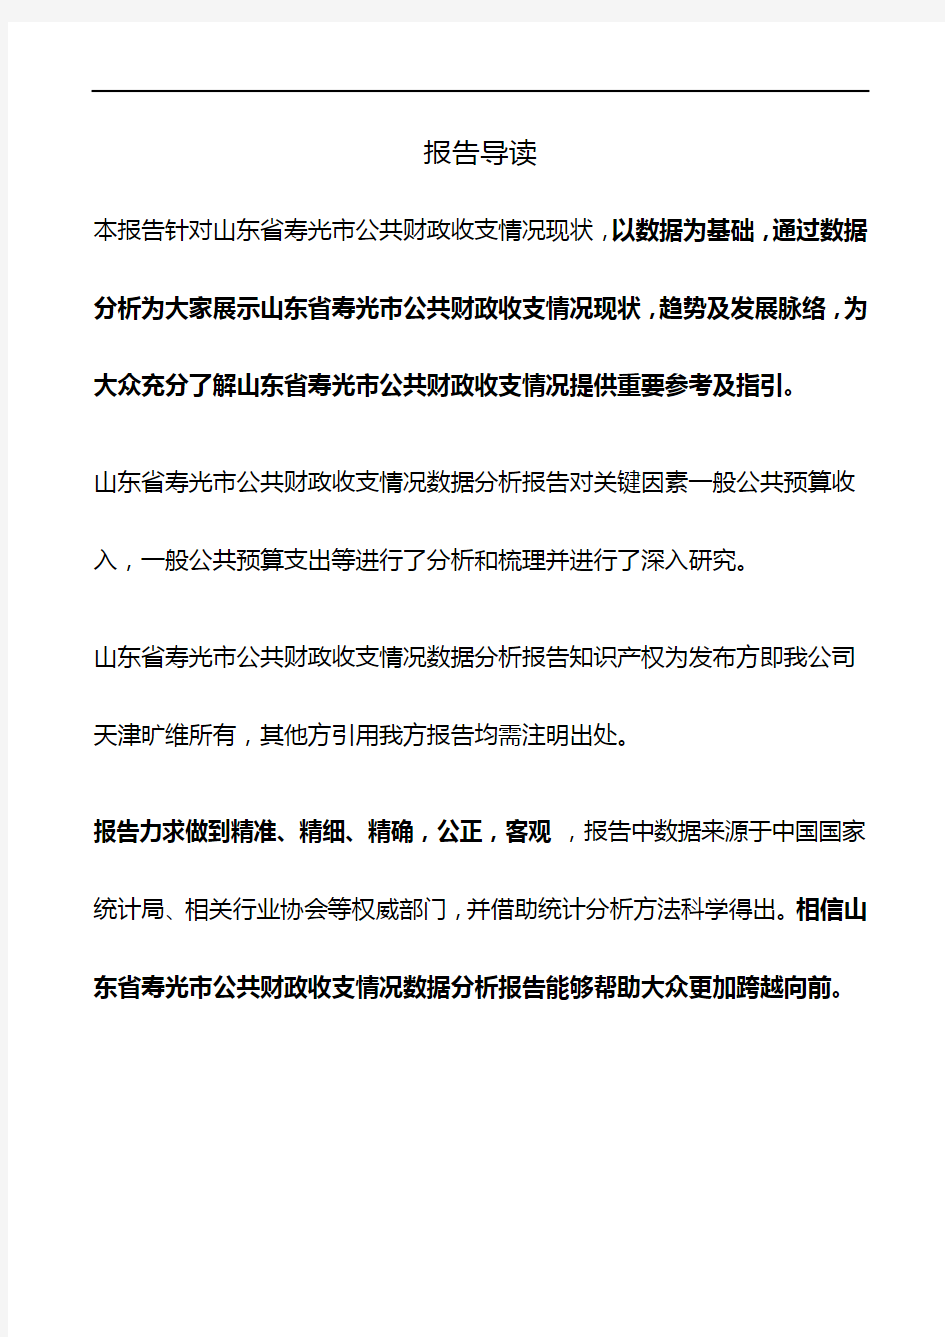 山东省寿光市公共财政收支情况3年数据分析报告2019版